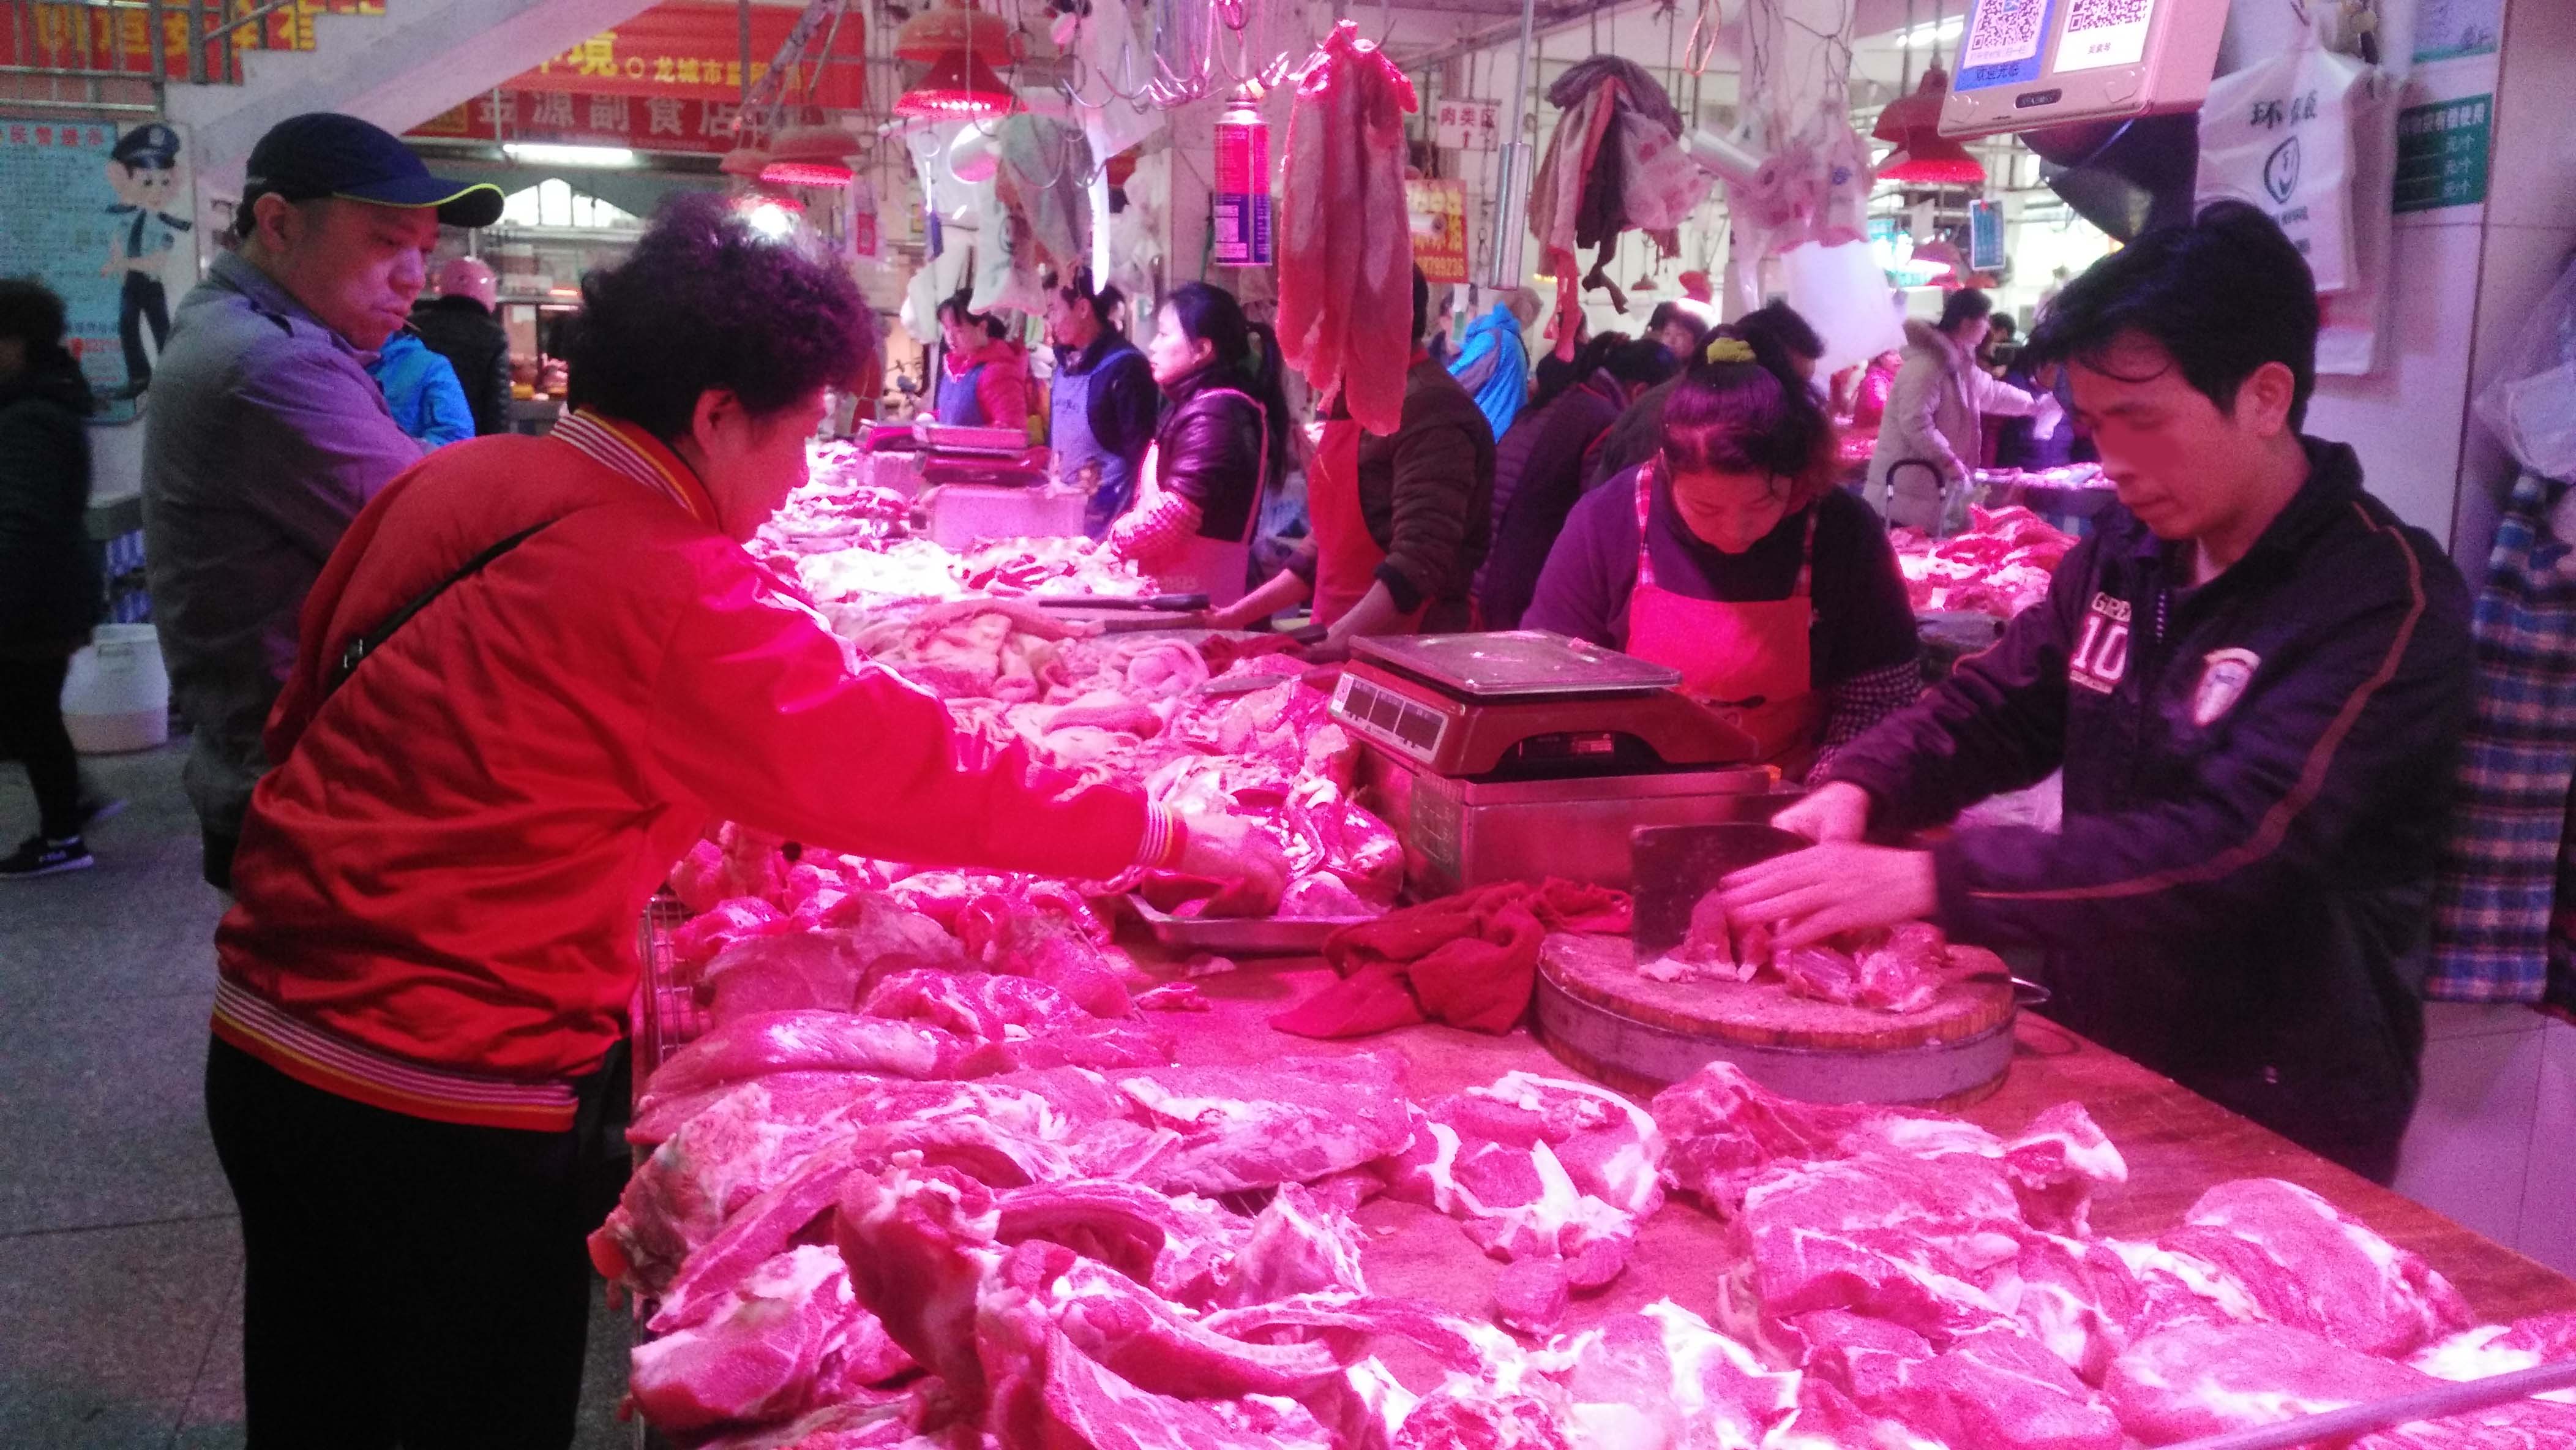 走进市场内,买猪肉的人也不少不是说现在有猪瘟吗?